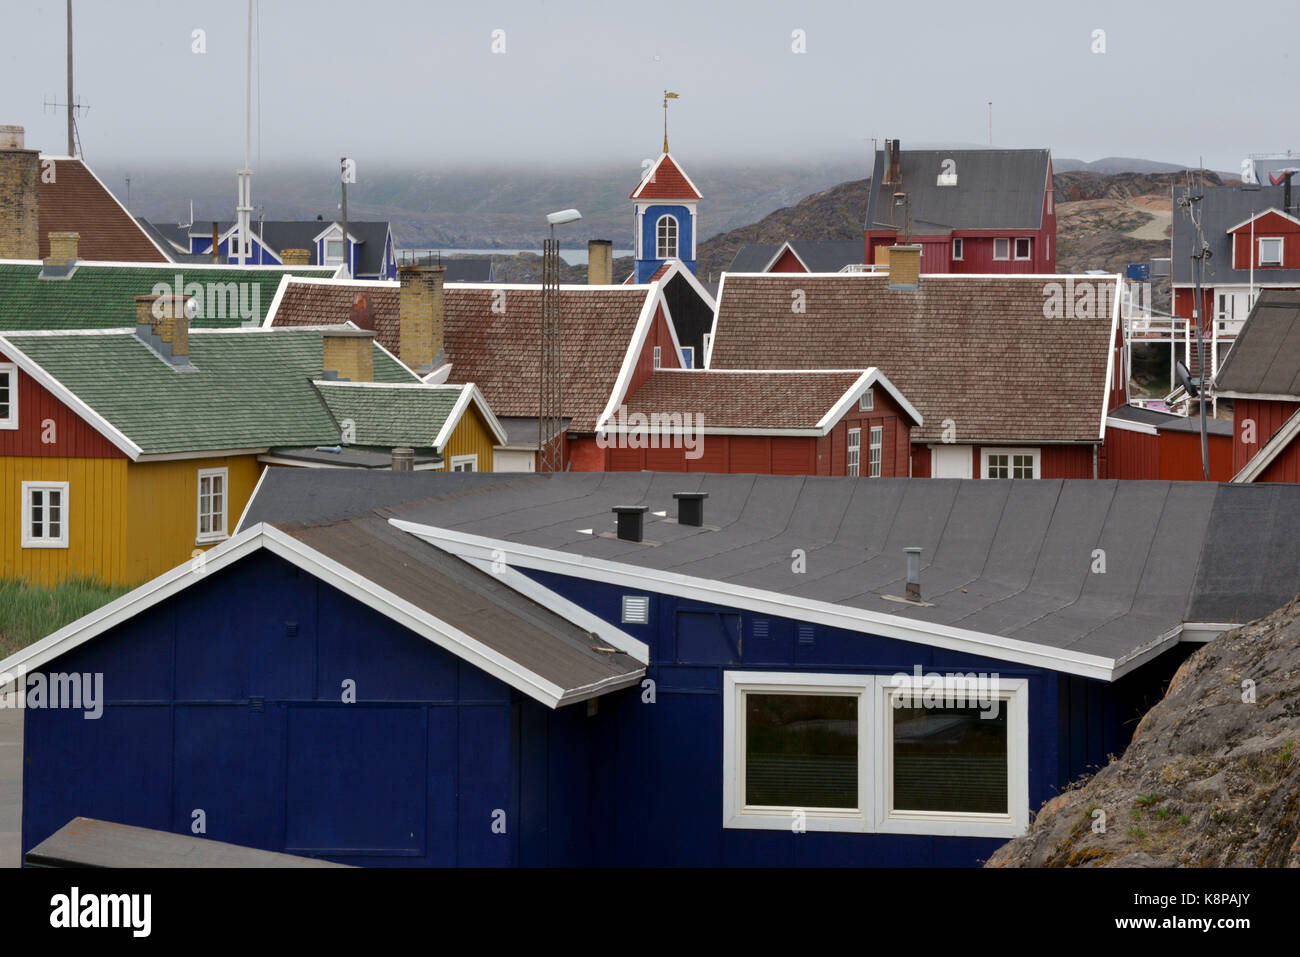 La ville de sisimiut, sur la côte ouest du Groenland. c'est le deuxième plus grand du pays, située dans un paysage montagneux, à 75 kilomètres au nord du cercle polaire. prises 16.08.2017. photo : karlheinz schindler/dpa-zentralbild/zb | conditions dans le monde entier Banque D'Images